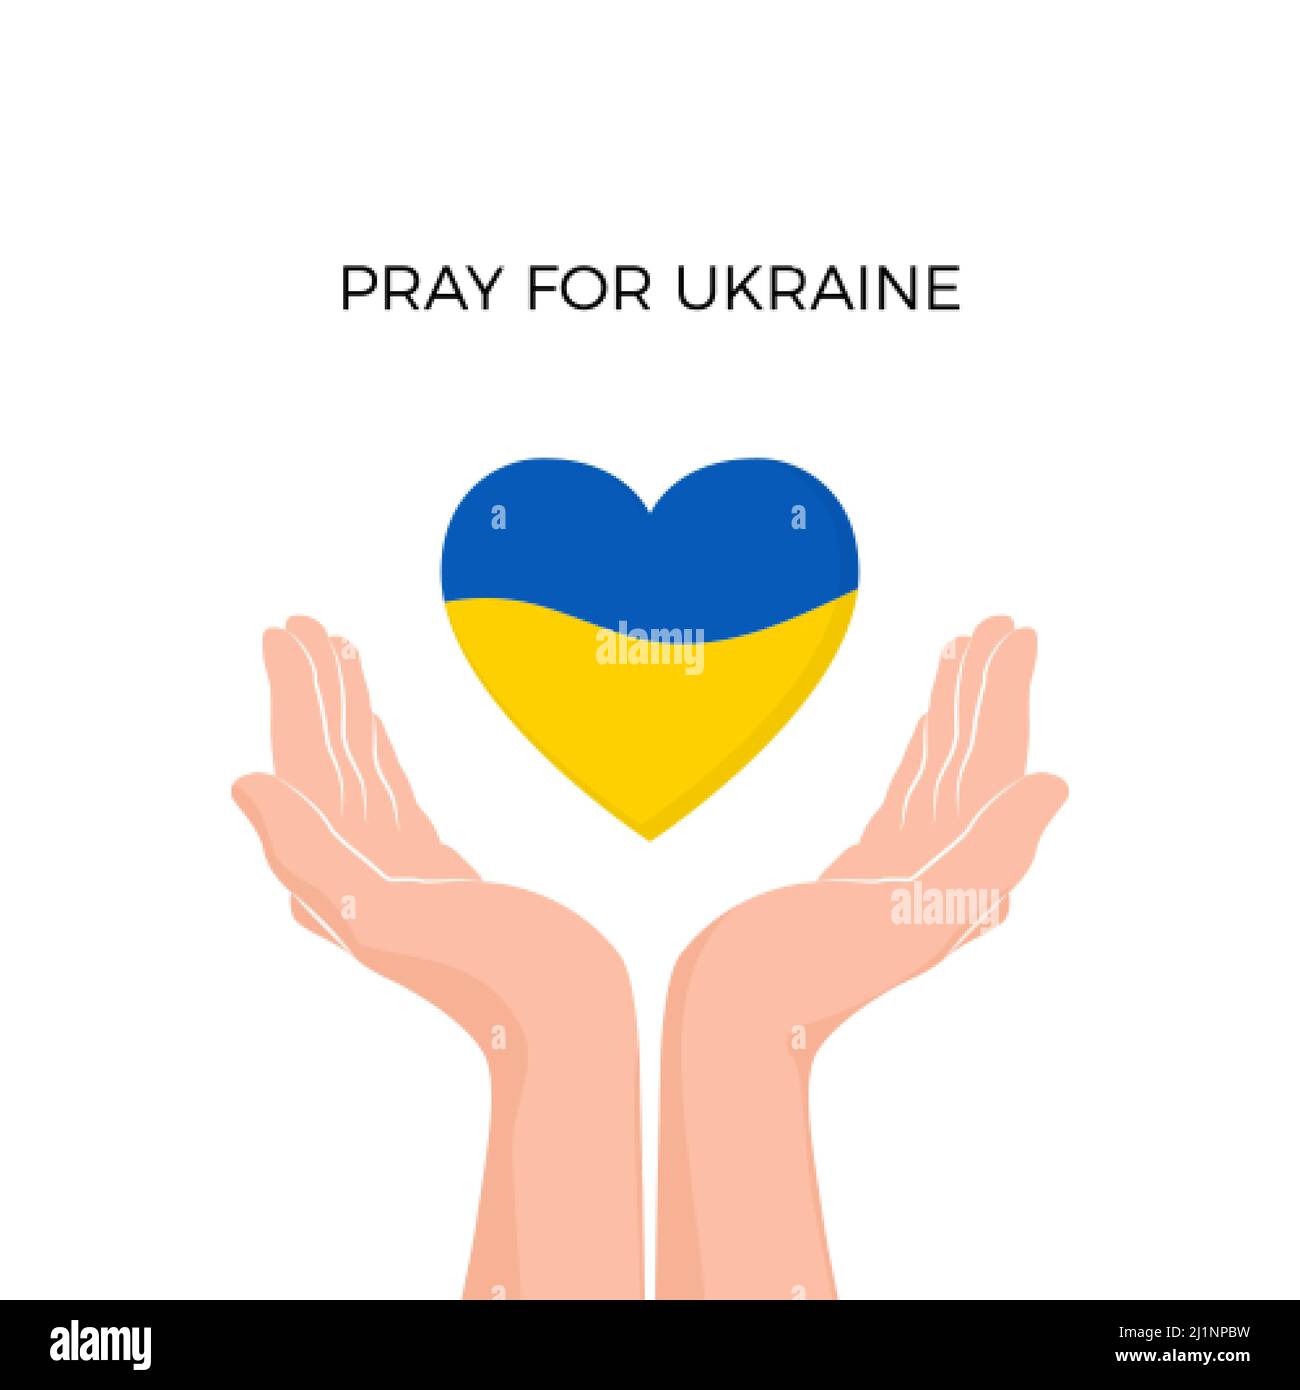 Hände mit Herz Silhouette in ukrainischen Flaggen Farben. Unterstützt die Ukraine im Krieg. Stoppt die militärische Invasion. Rettet Menschen und gebt ihnen Hoffnung. Vektorgrafiken Stock Vektor